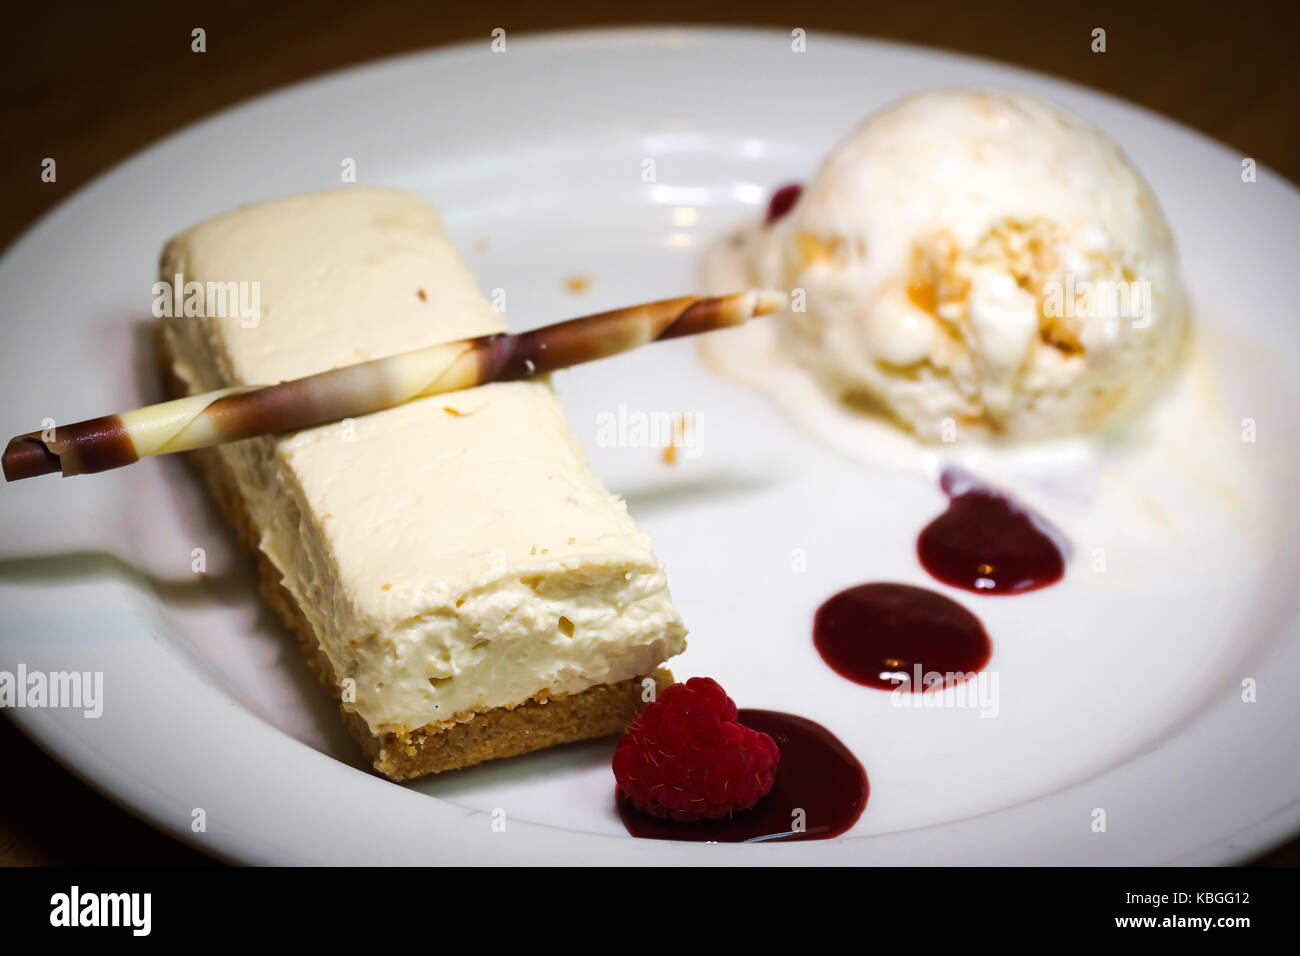 Un gâteau au fromage au chocolat blanc couplé avec une crème glacée vanille miel et un coulis de framboise Banque D'Images